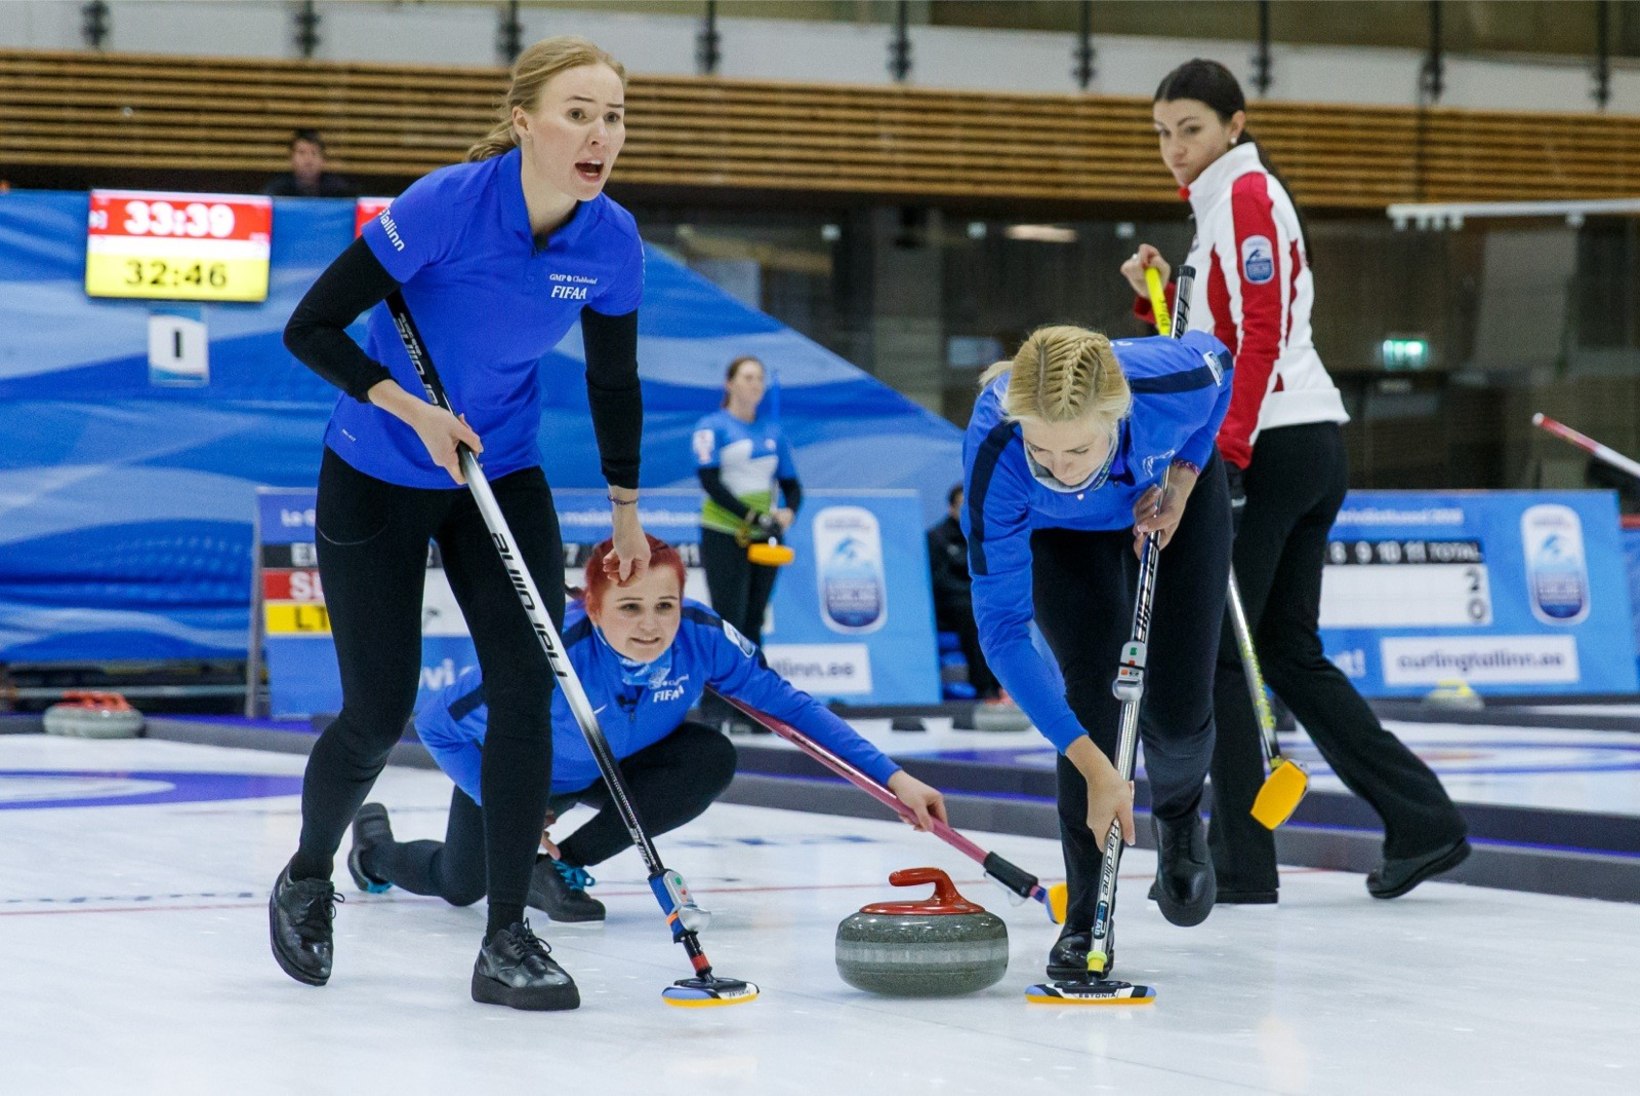 Eesti curlingunaiskond pusis kõvasti, kuid tugevale vastasele tuli siiski alla vanduda